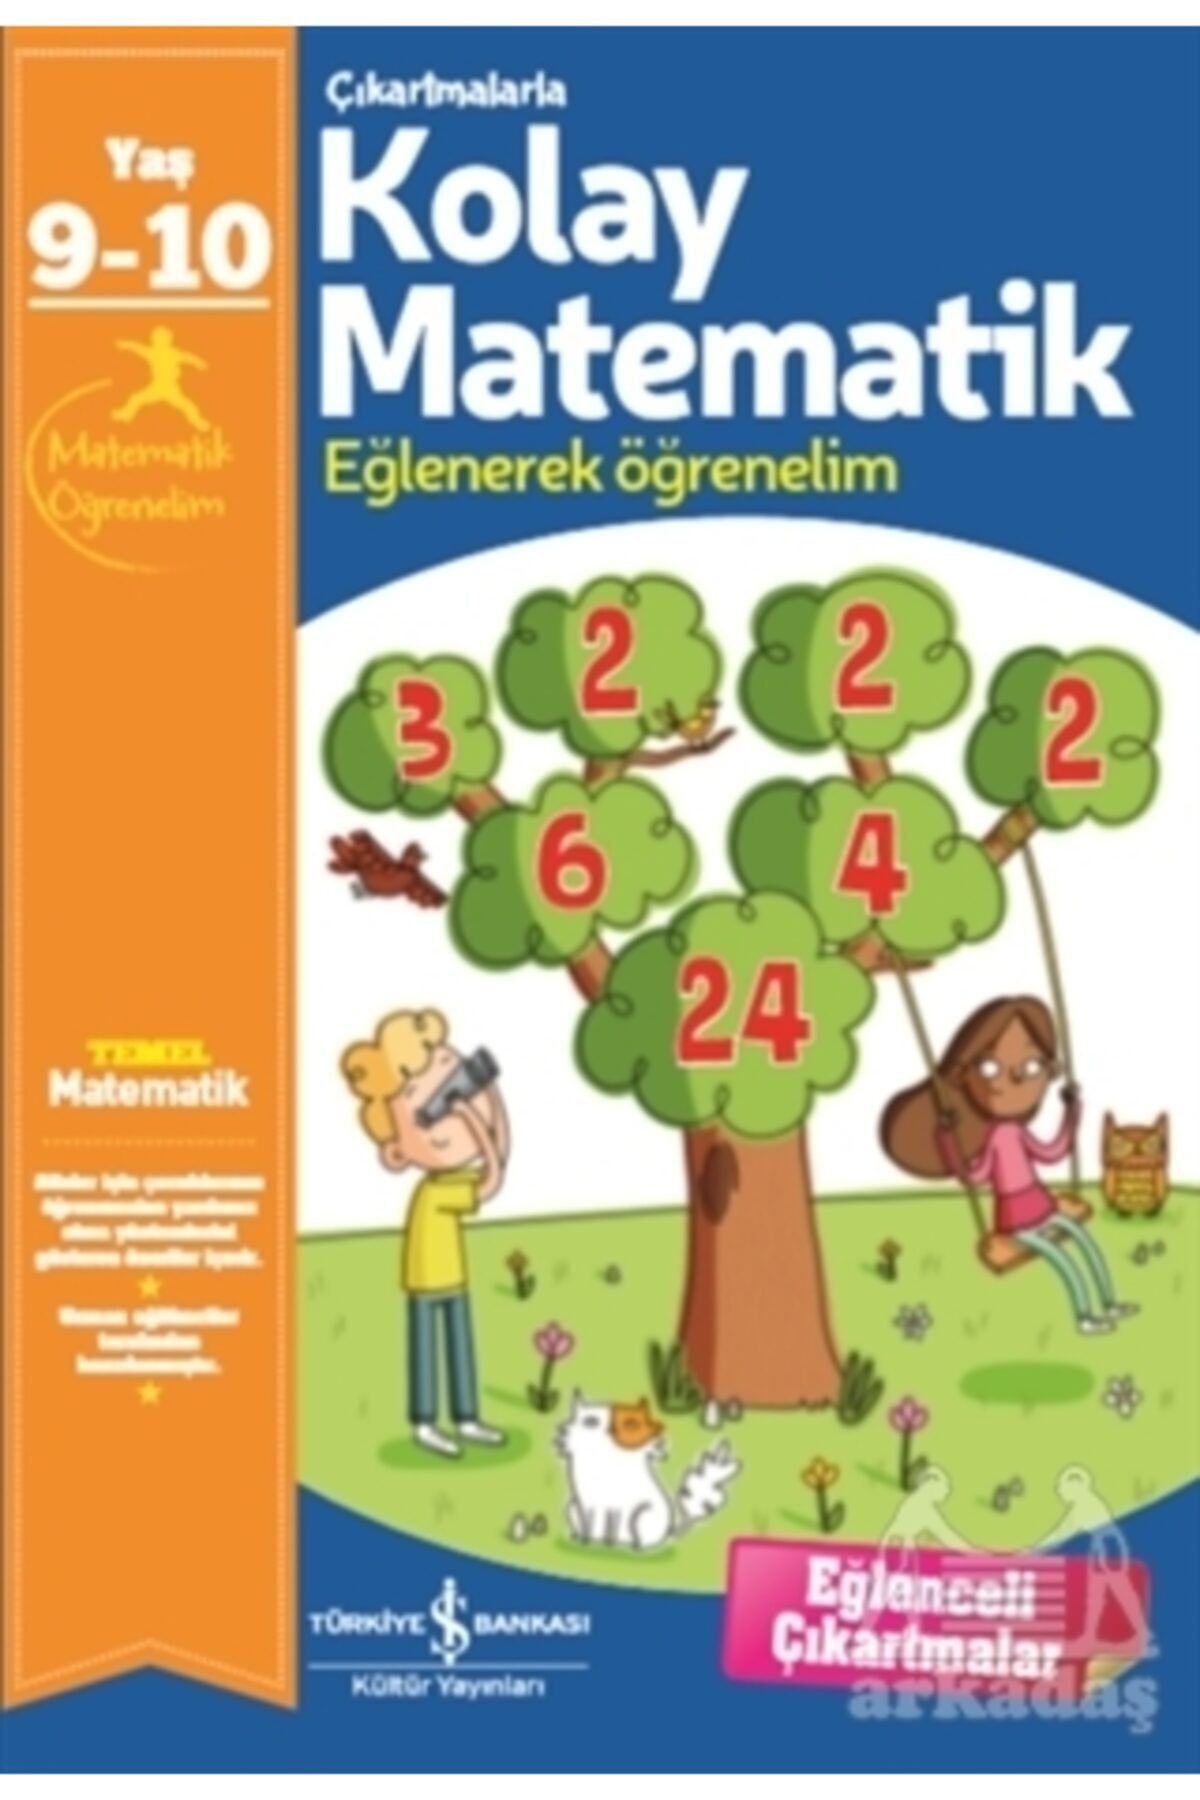 Türkiye İş Bankası Kültür Yayınları Çıkartmalarla Kolay Matematik (9-10 Yaş)